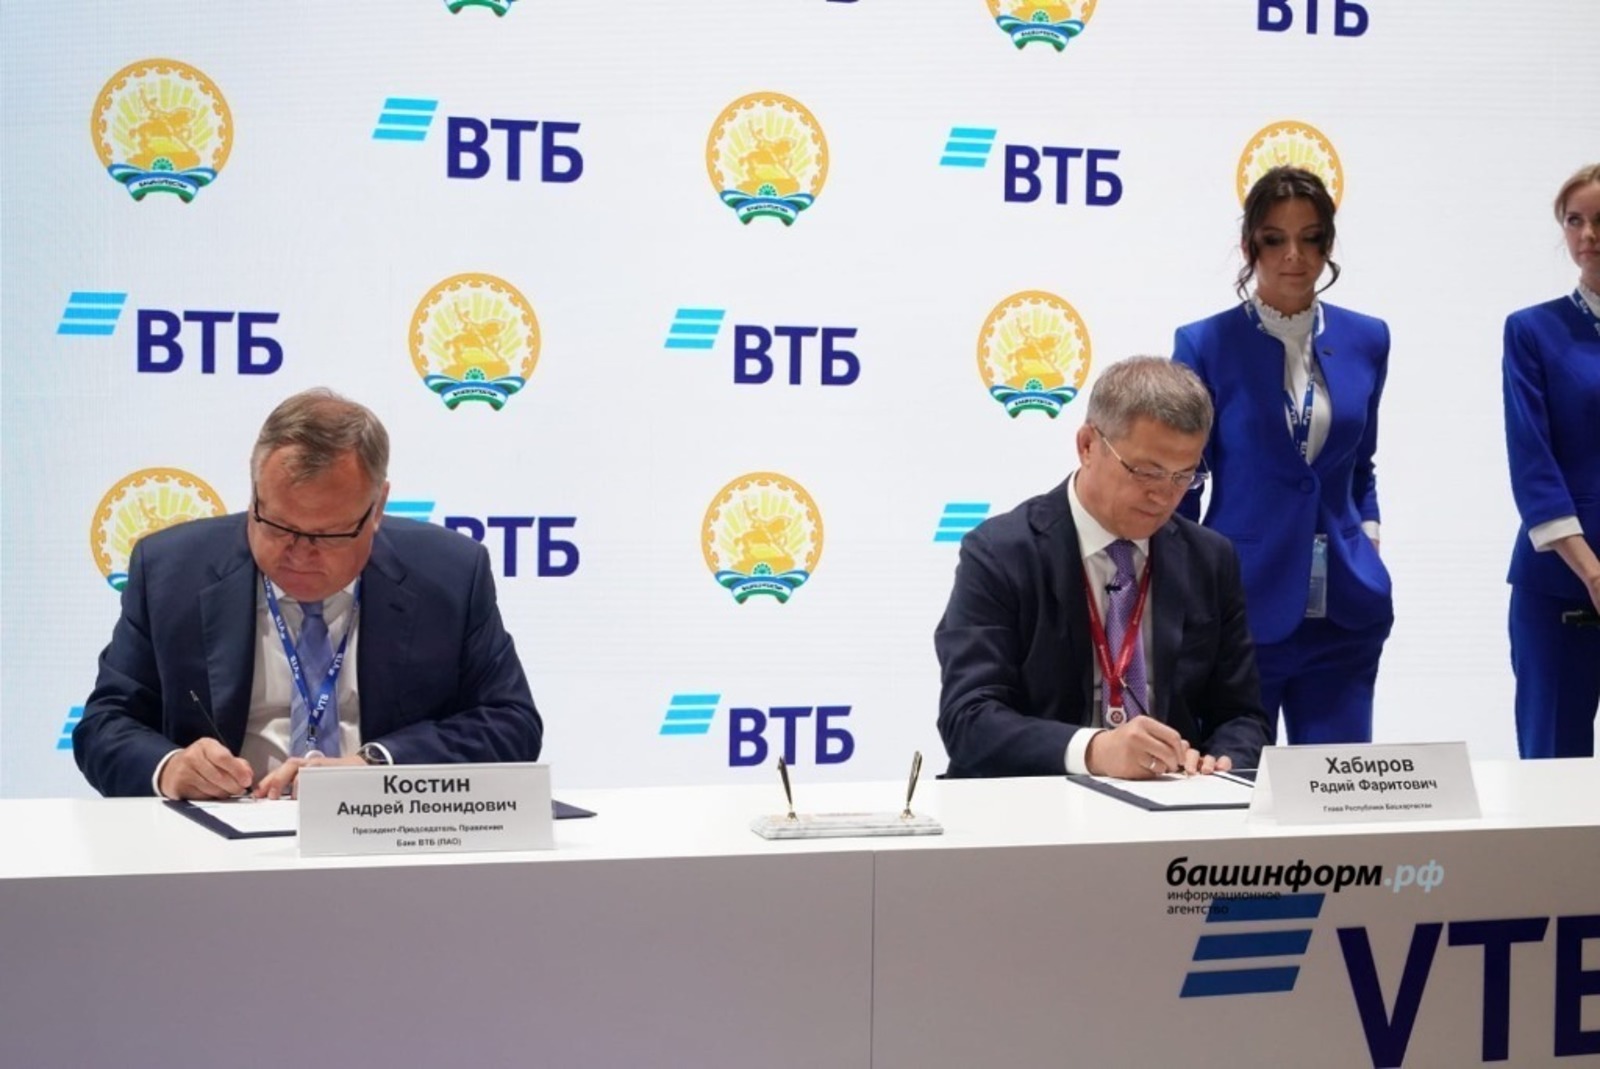 Башкирия и Группа ВТБ расширяют сотрудничество в строительстве инфраструктурных объектов